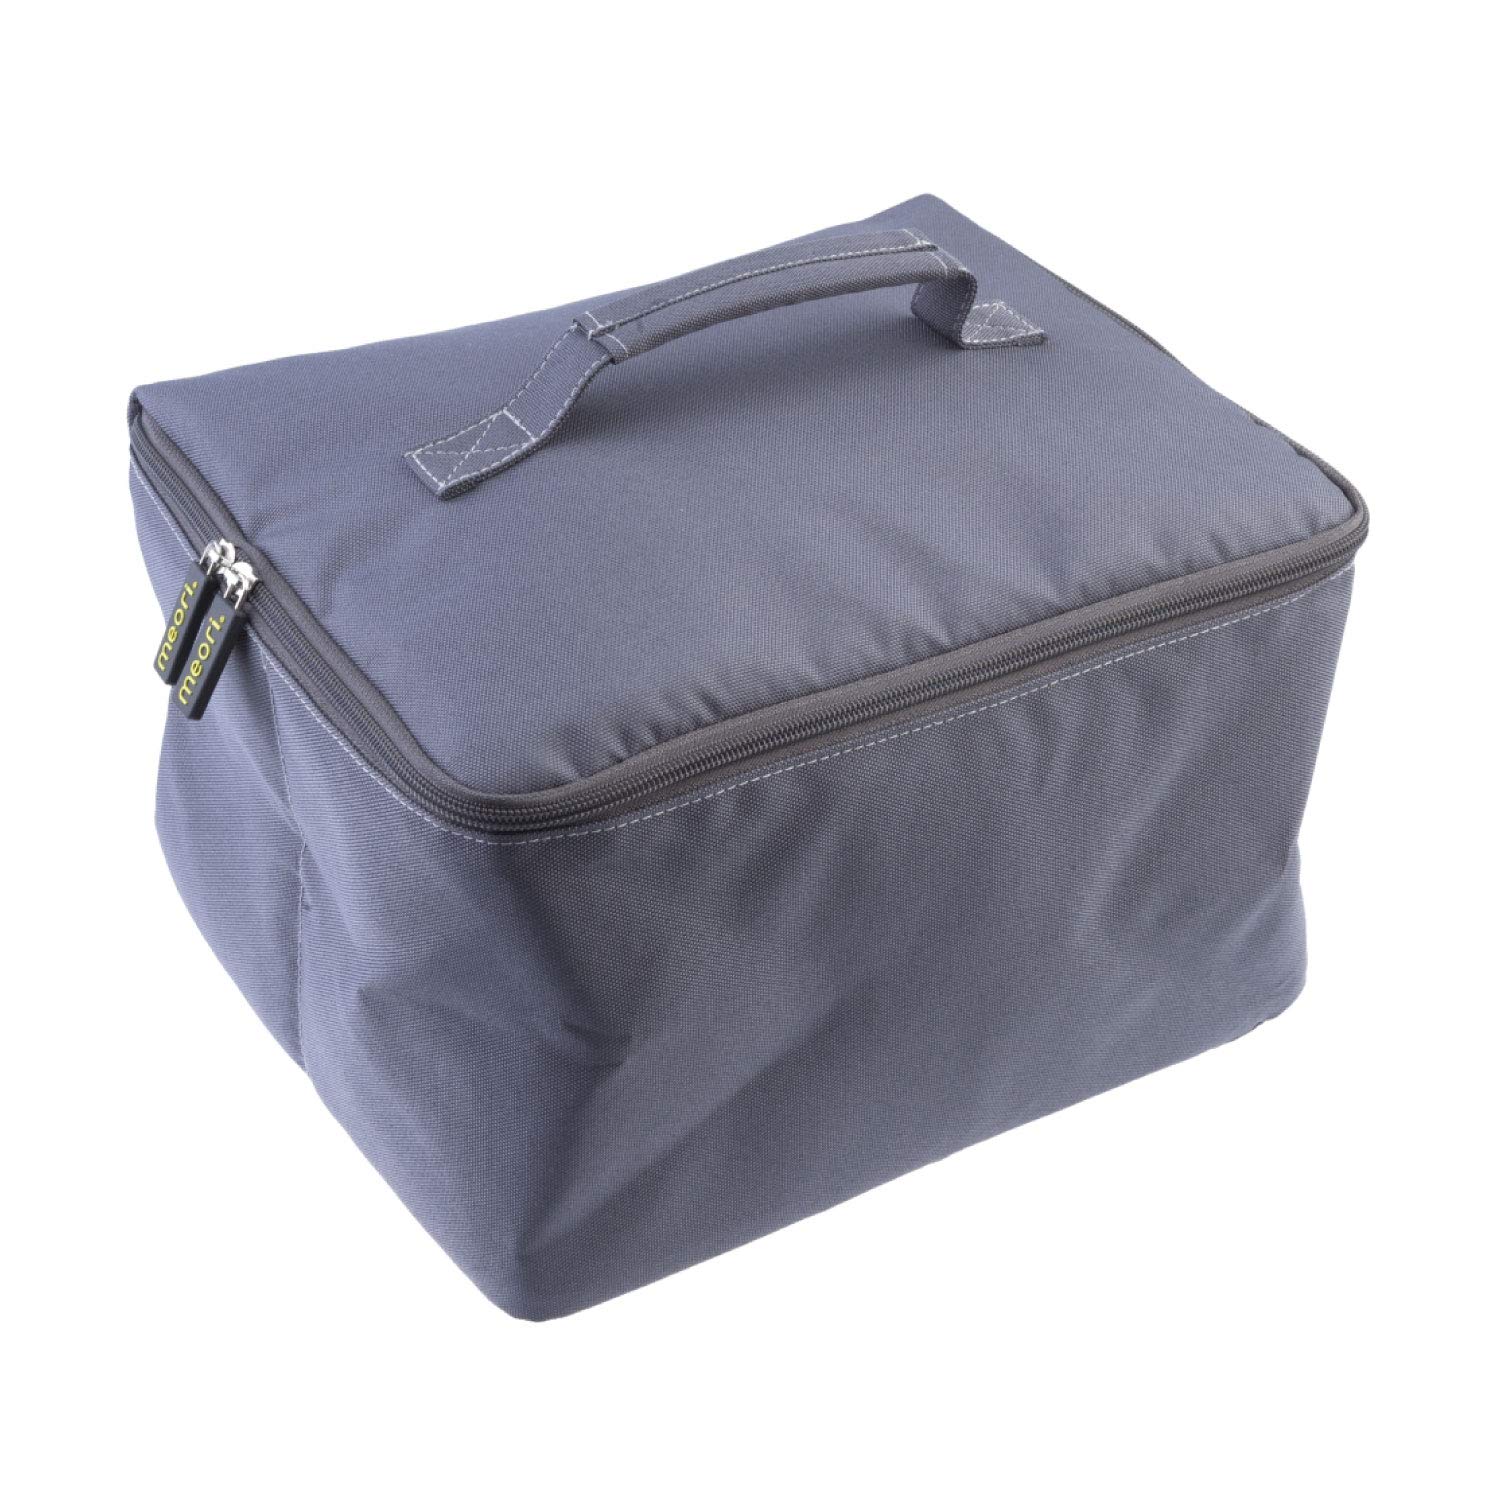 Kühltasche für alle meori Faltboxen Small, Medium, Large und Outdoor Reißverschluss stabil Polyester Isolierung Einkauf Picknick Frischhalten von meori